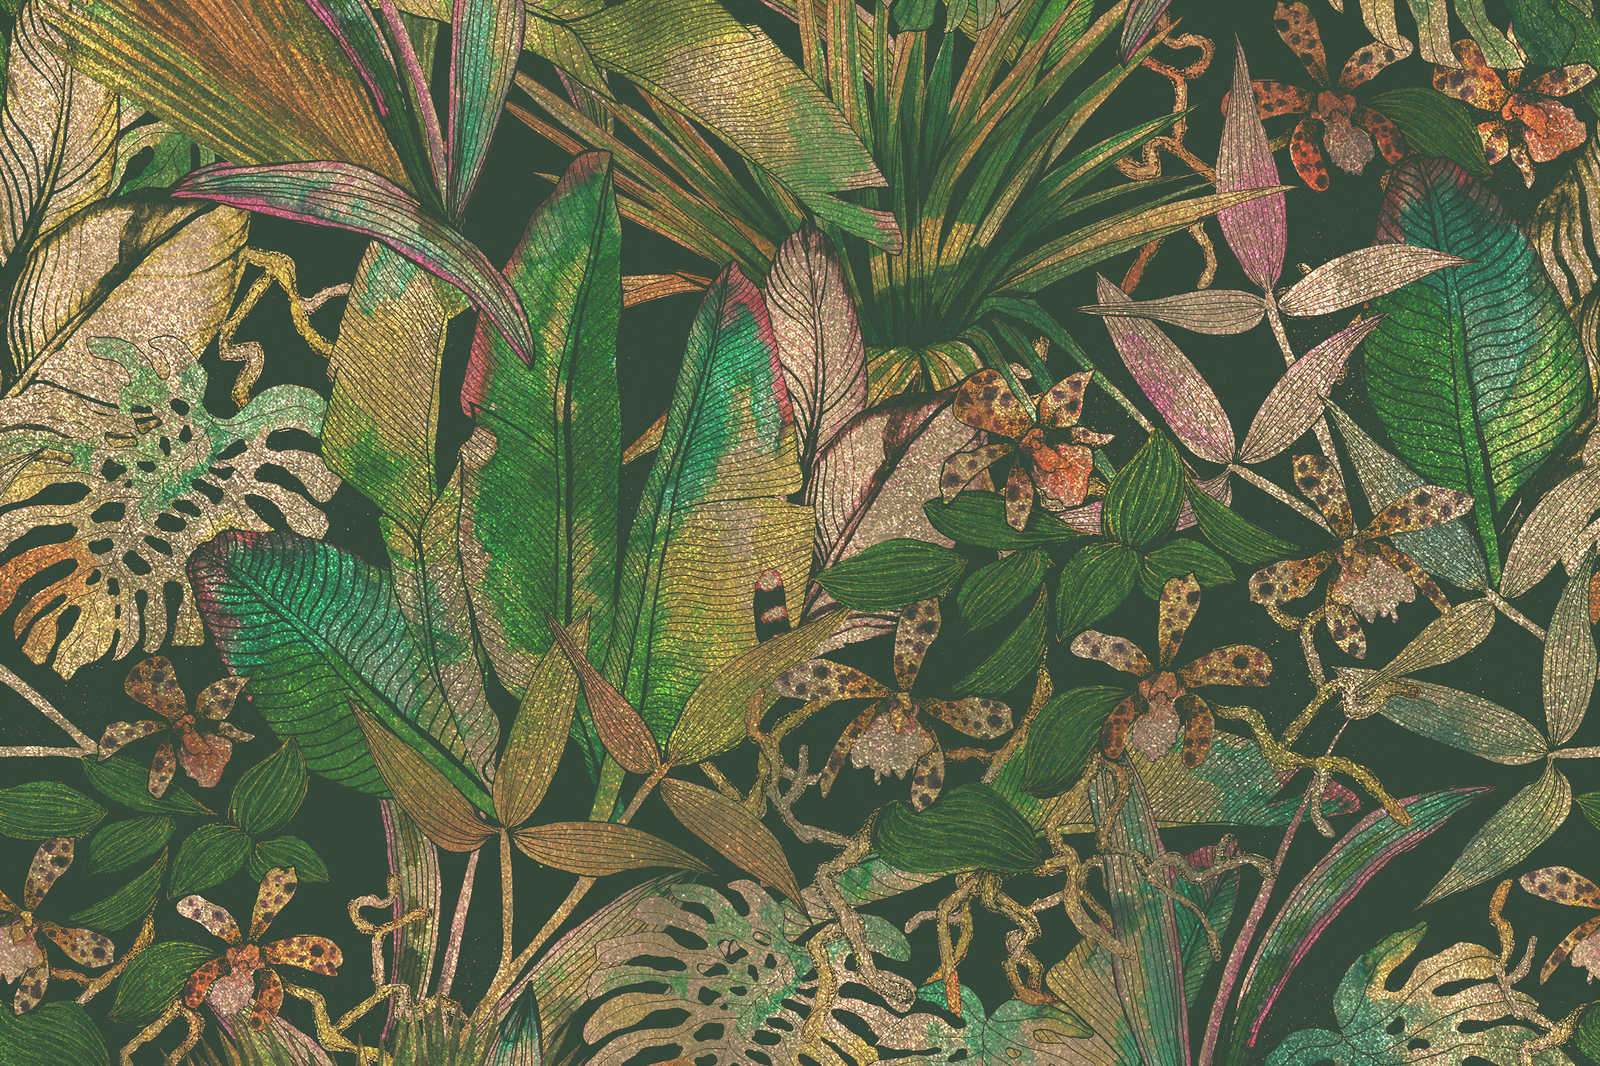             Toile motif jungle avec feuilles et fleurs - 0,90 m x 0,60 m
        